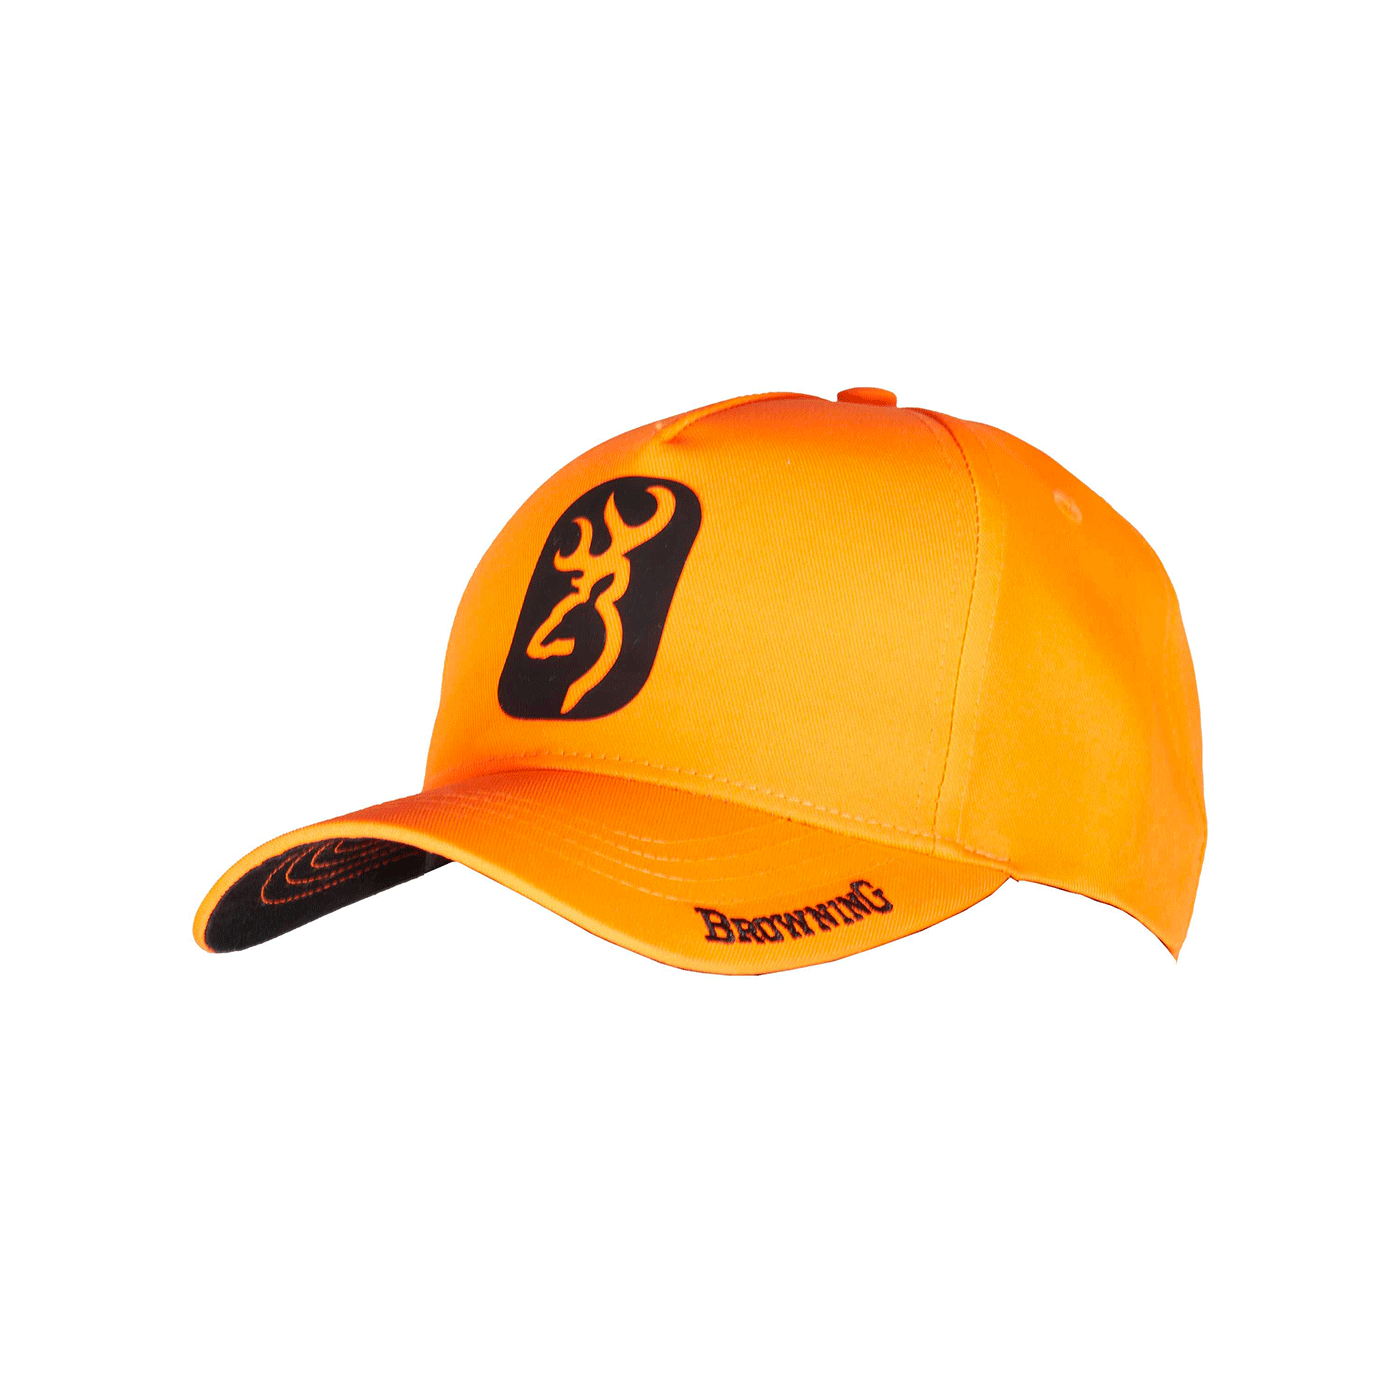 HAT - BROWNING - CAP MORE ORANGE